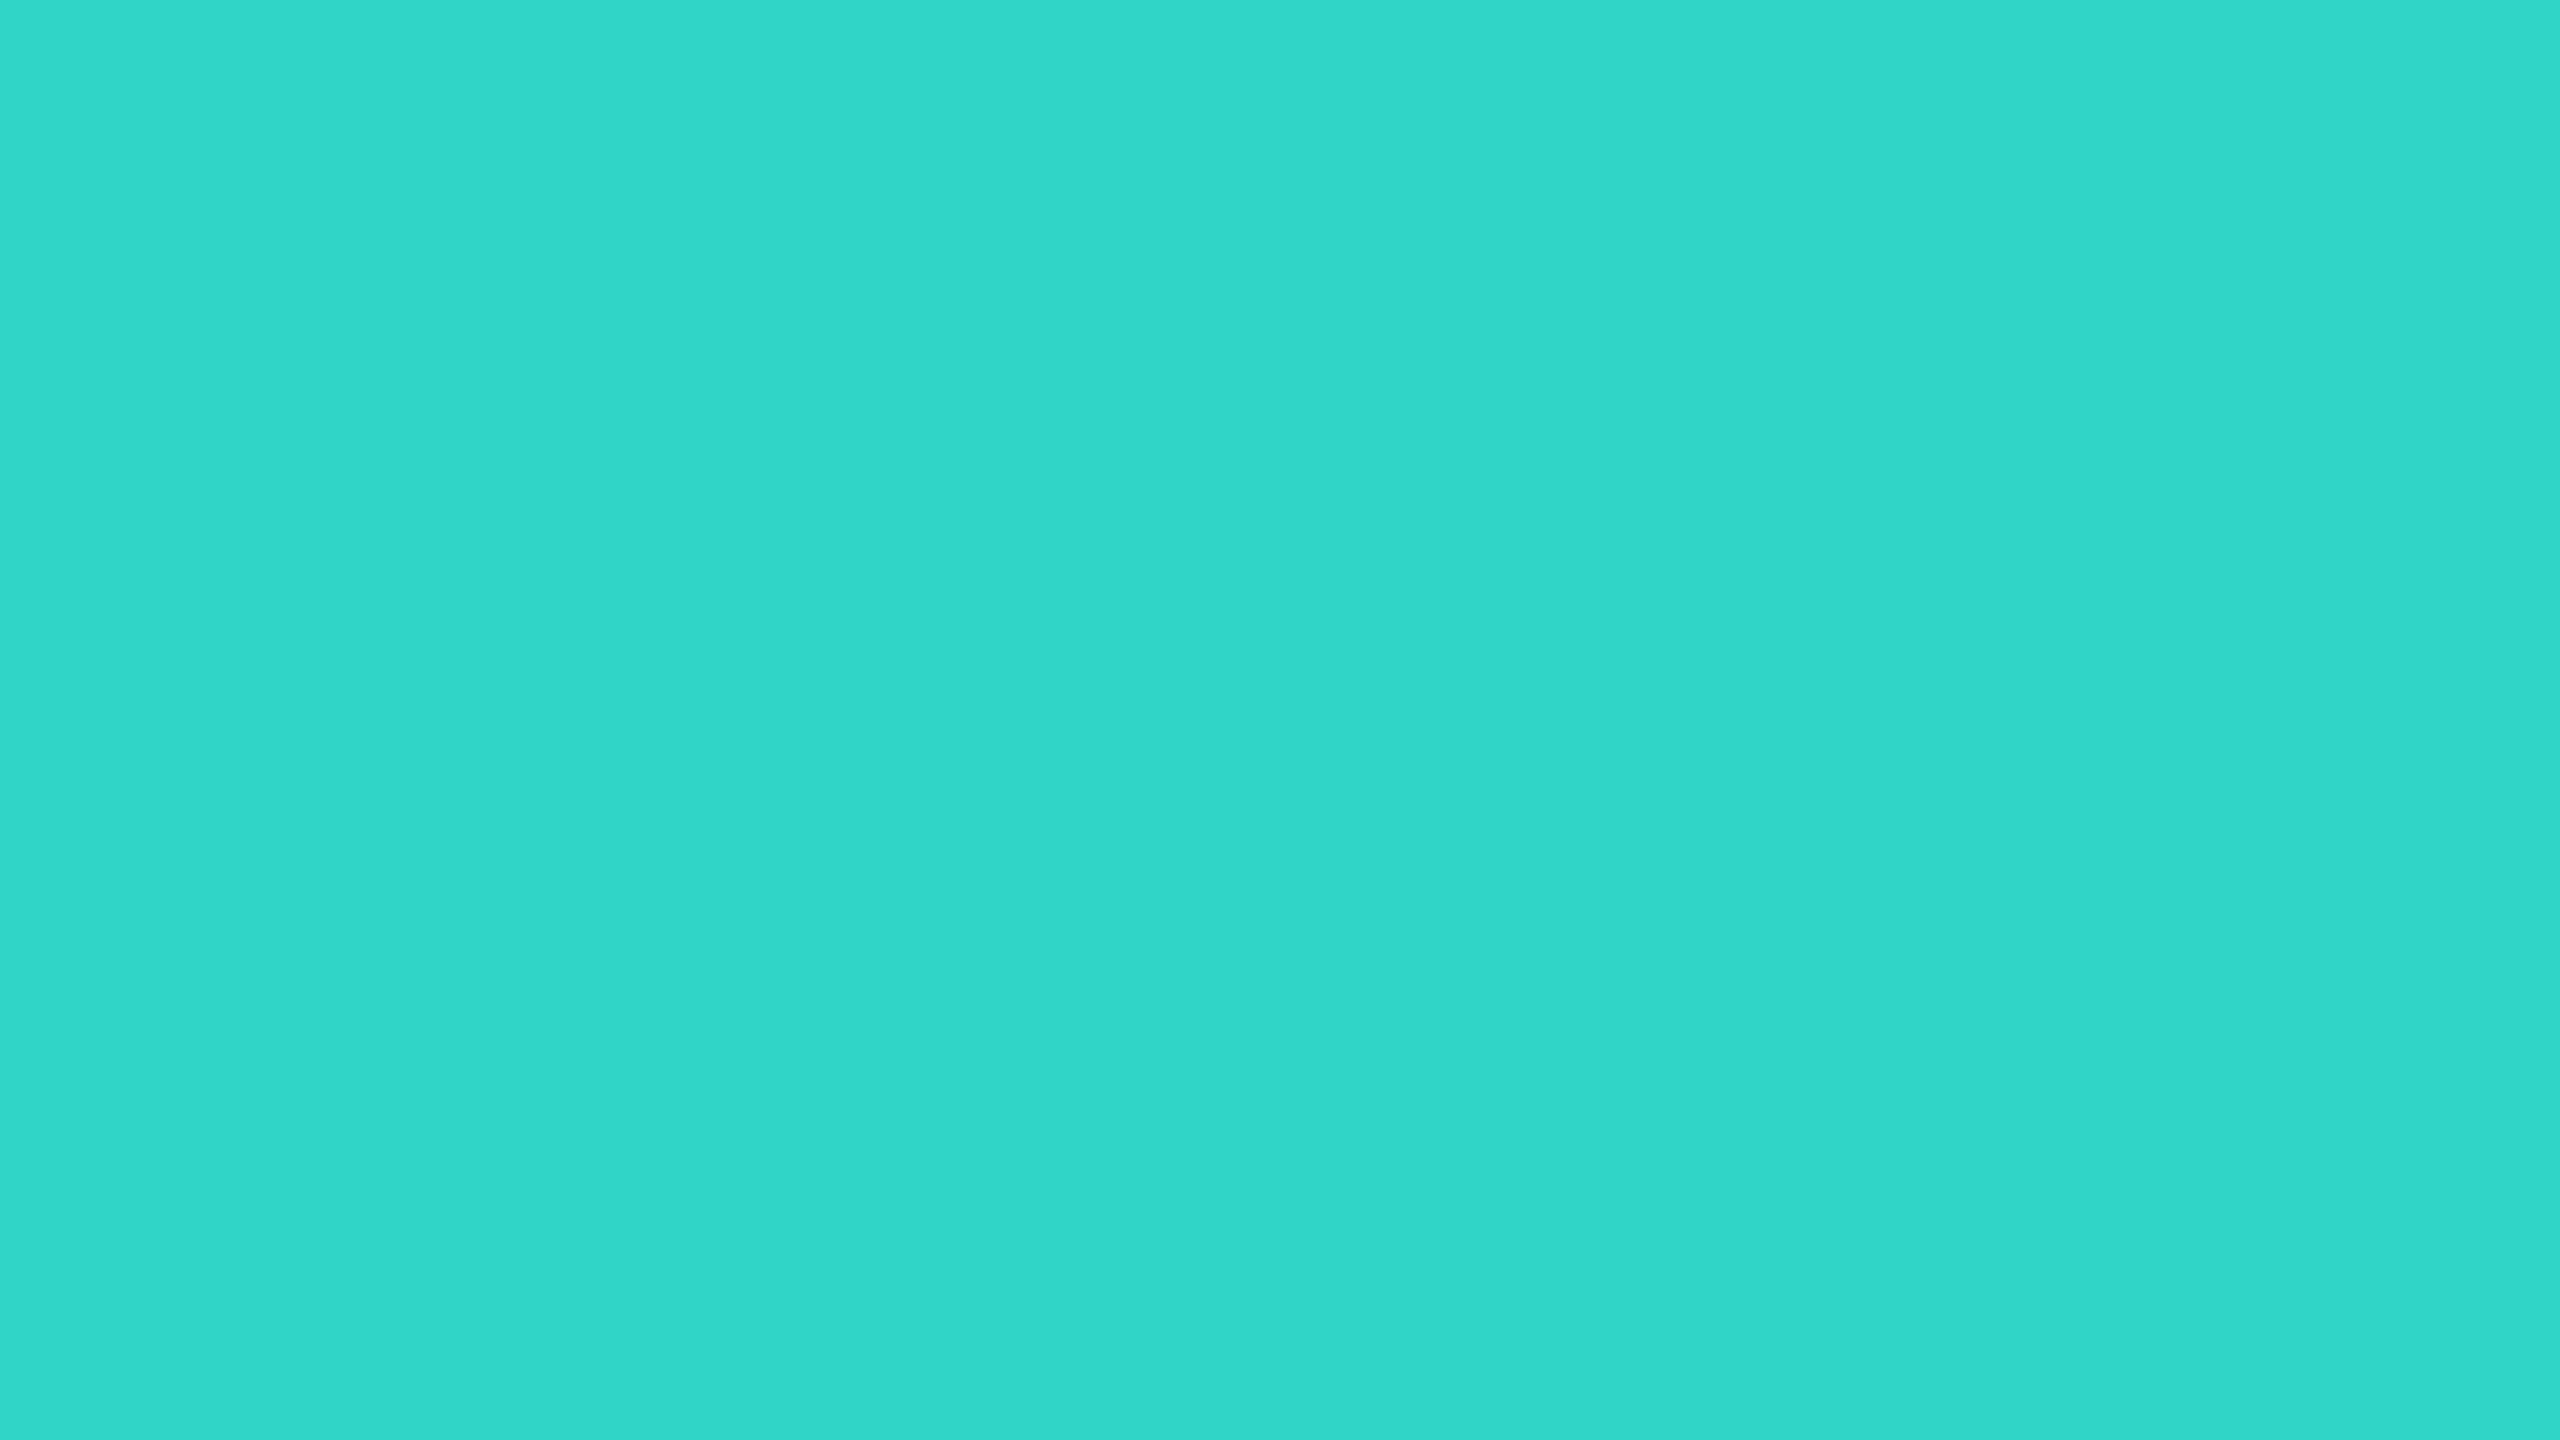 Turquoise: Màu xanh ngọc lợt là sự pha trộn hoàn hảo giữa xanh lá cây và xanh lục biển. Hãy chiêm ngưỡng bức ảnh liên quan đến màu sắc đầy sức sống này và để nó mang đến cảm giác thanh tịnh và yên bình cho bạn.